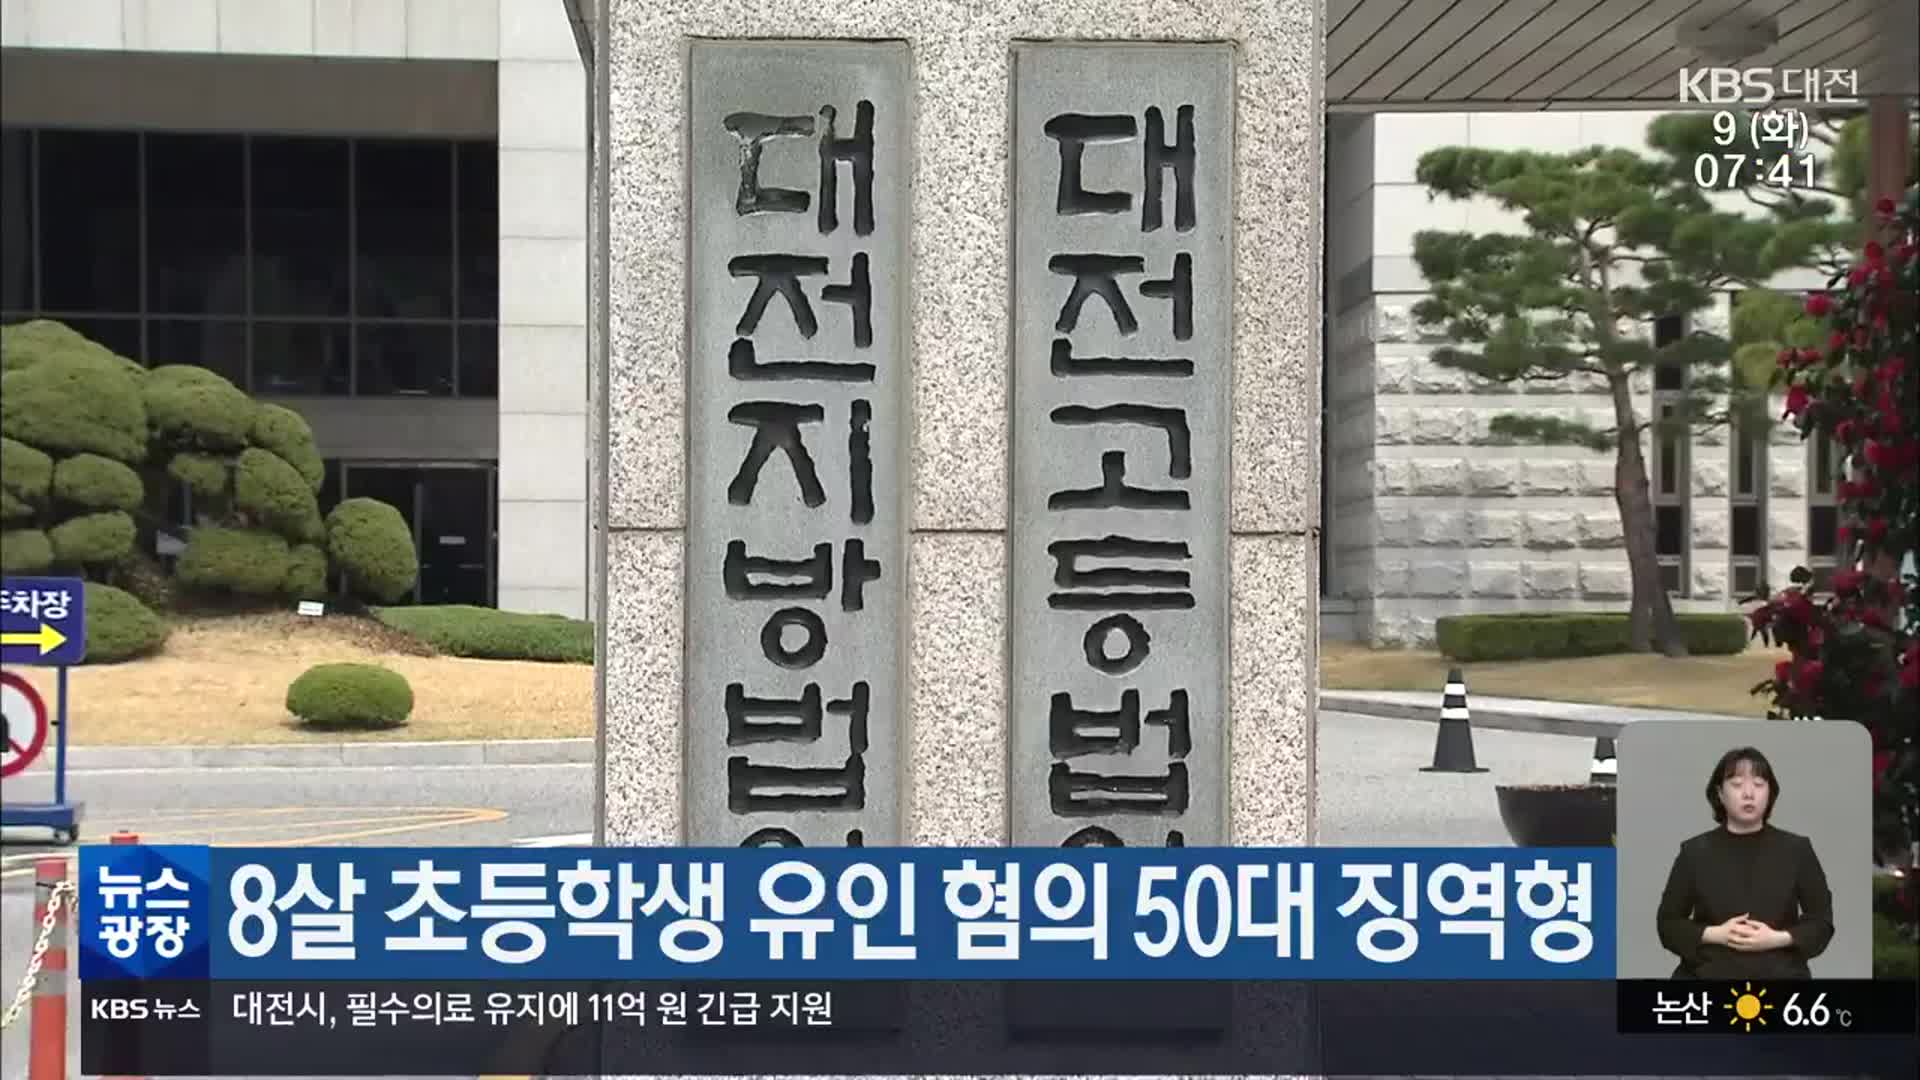 8살 초등학생 유인 혐의 50대 징역형